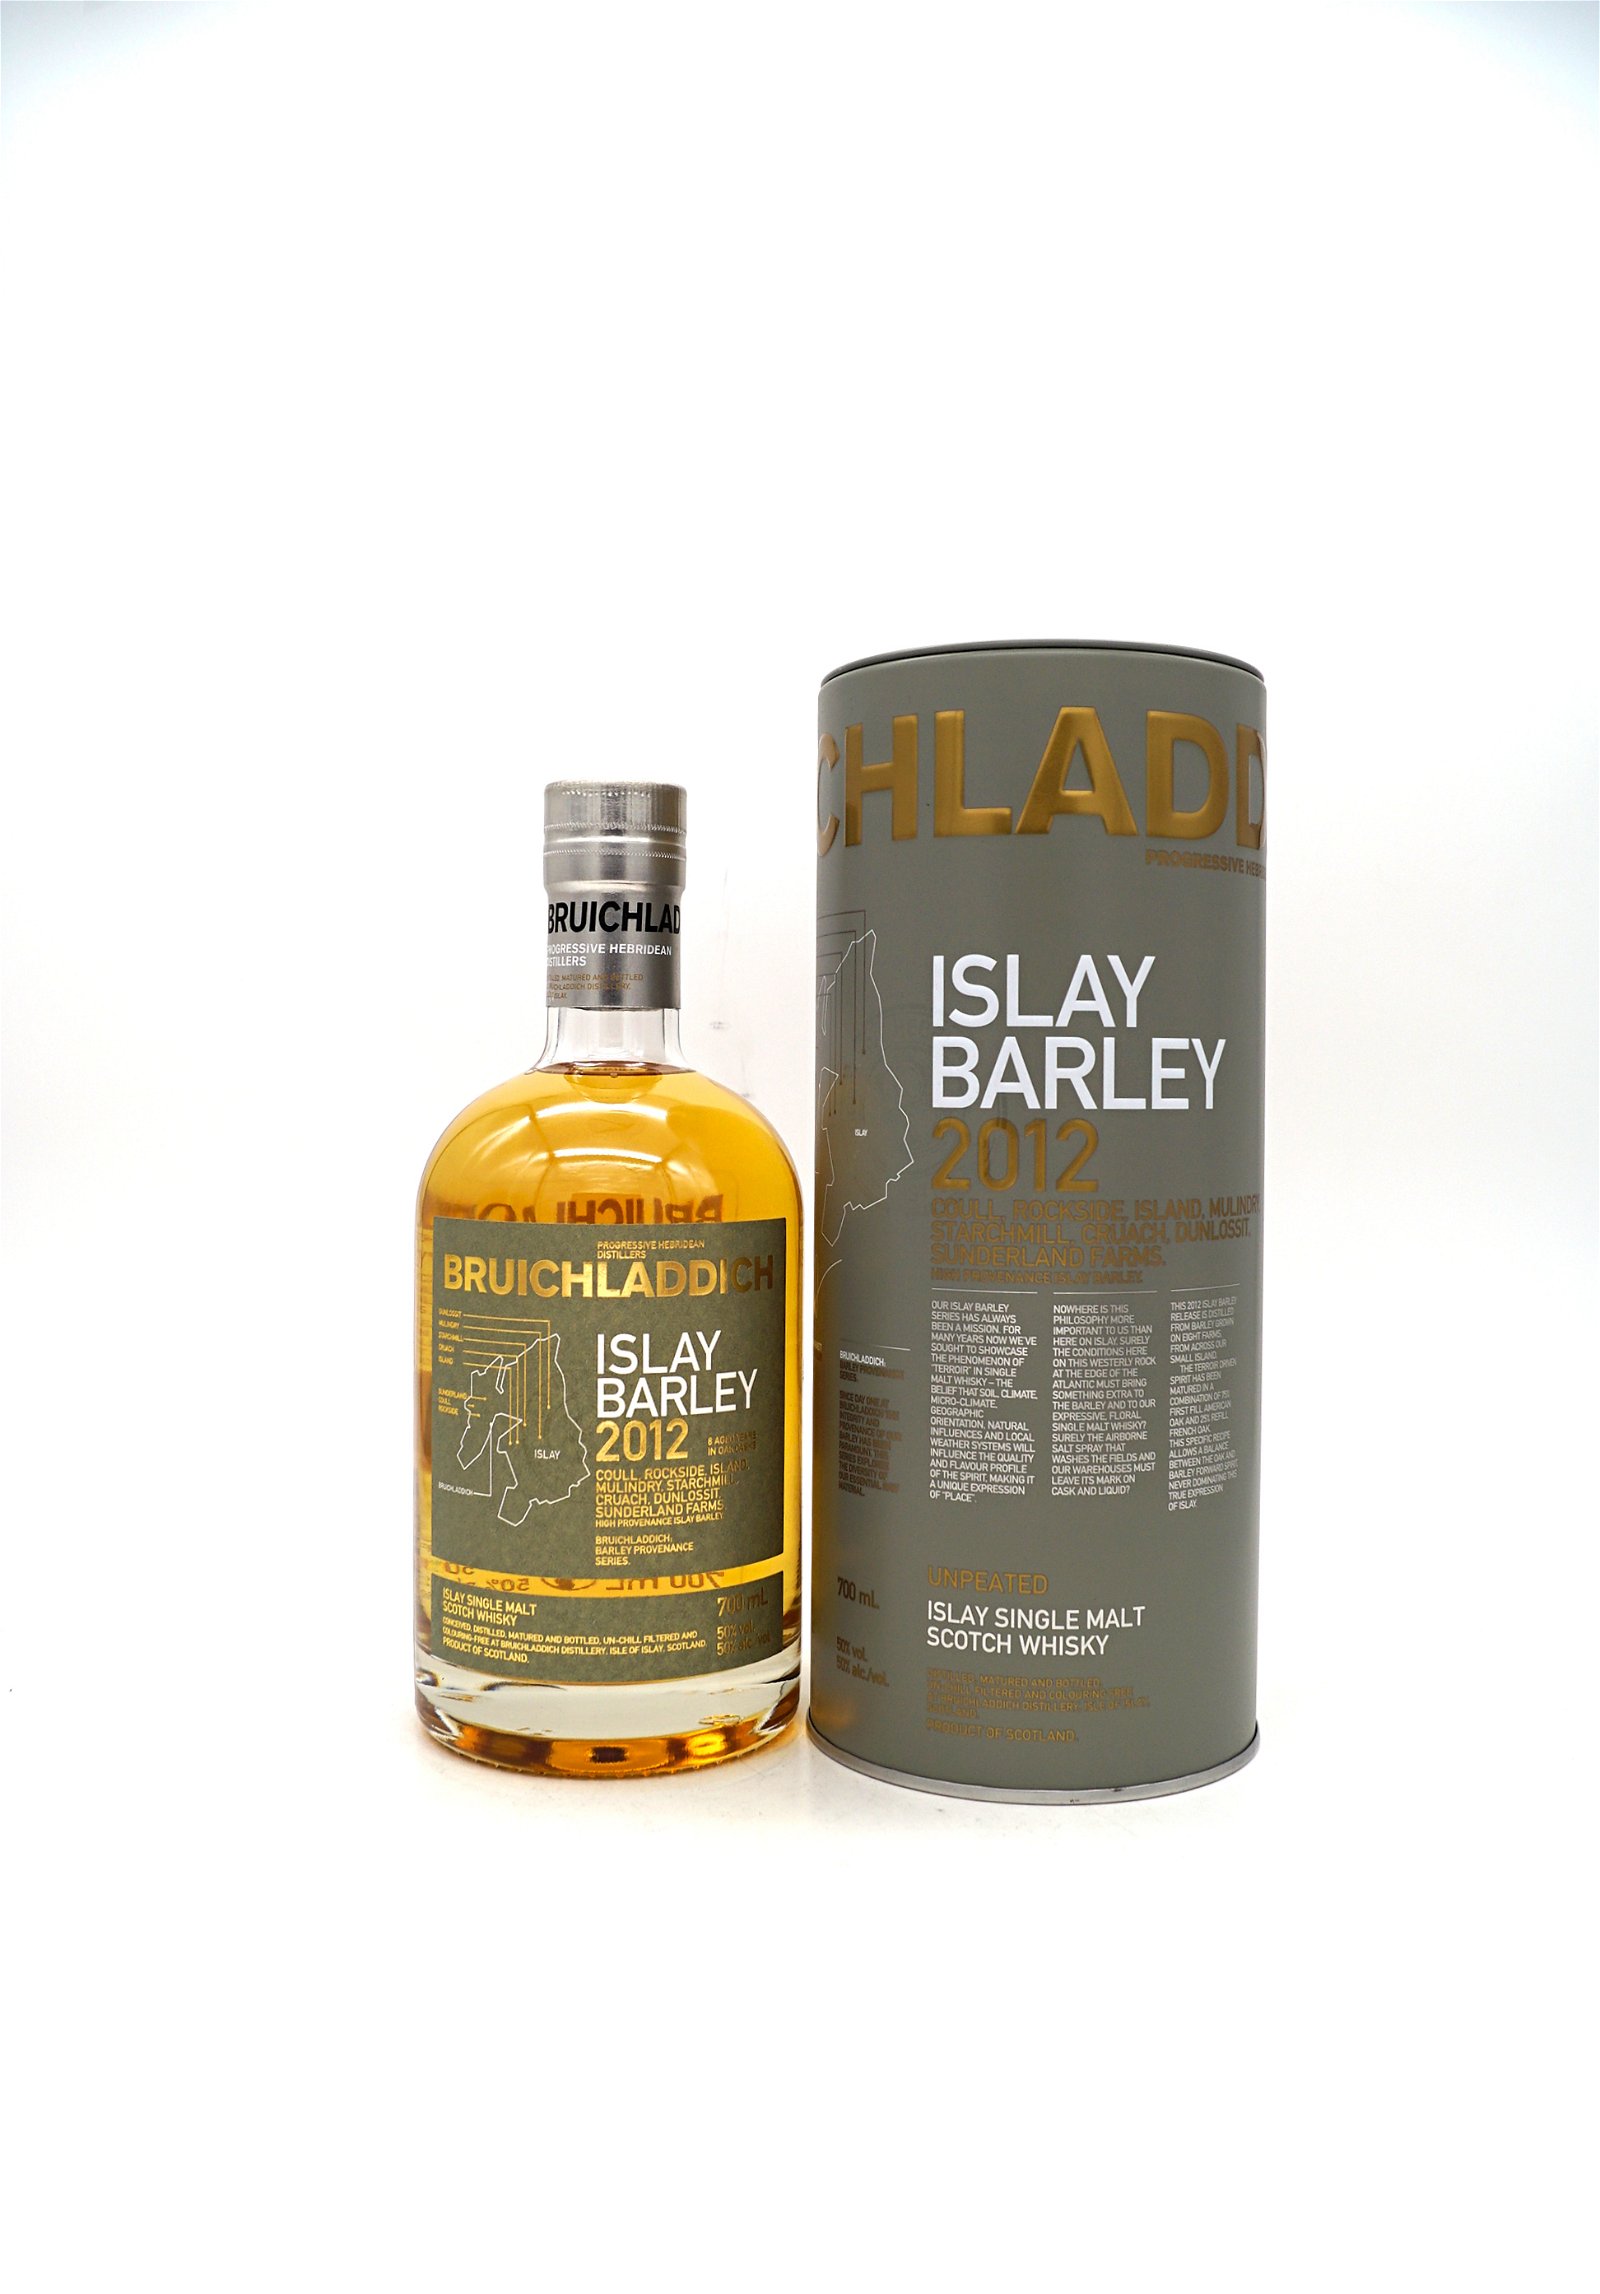 Bruichladdich 2012 Islay Barley Unpeated Islay Single Malt Scotch Whisky